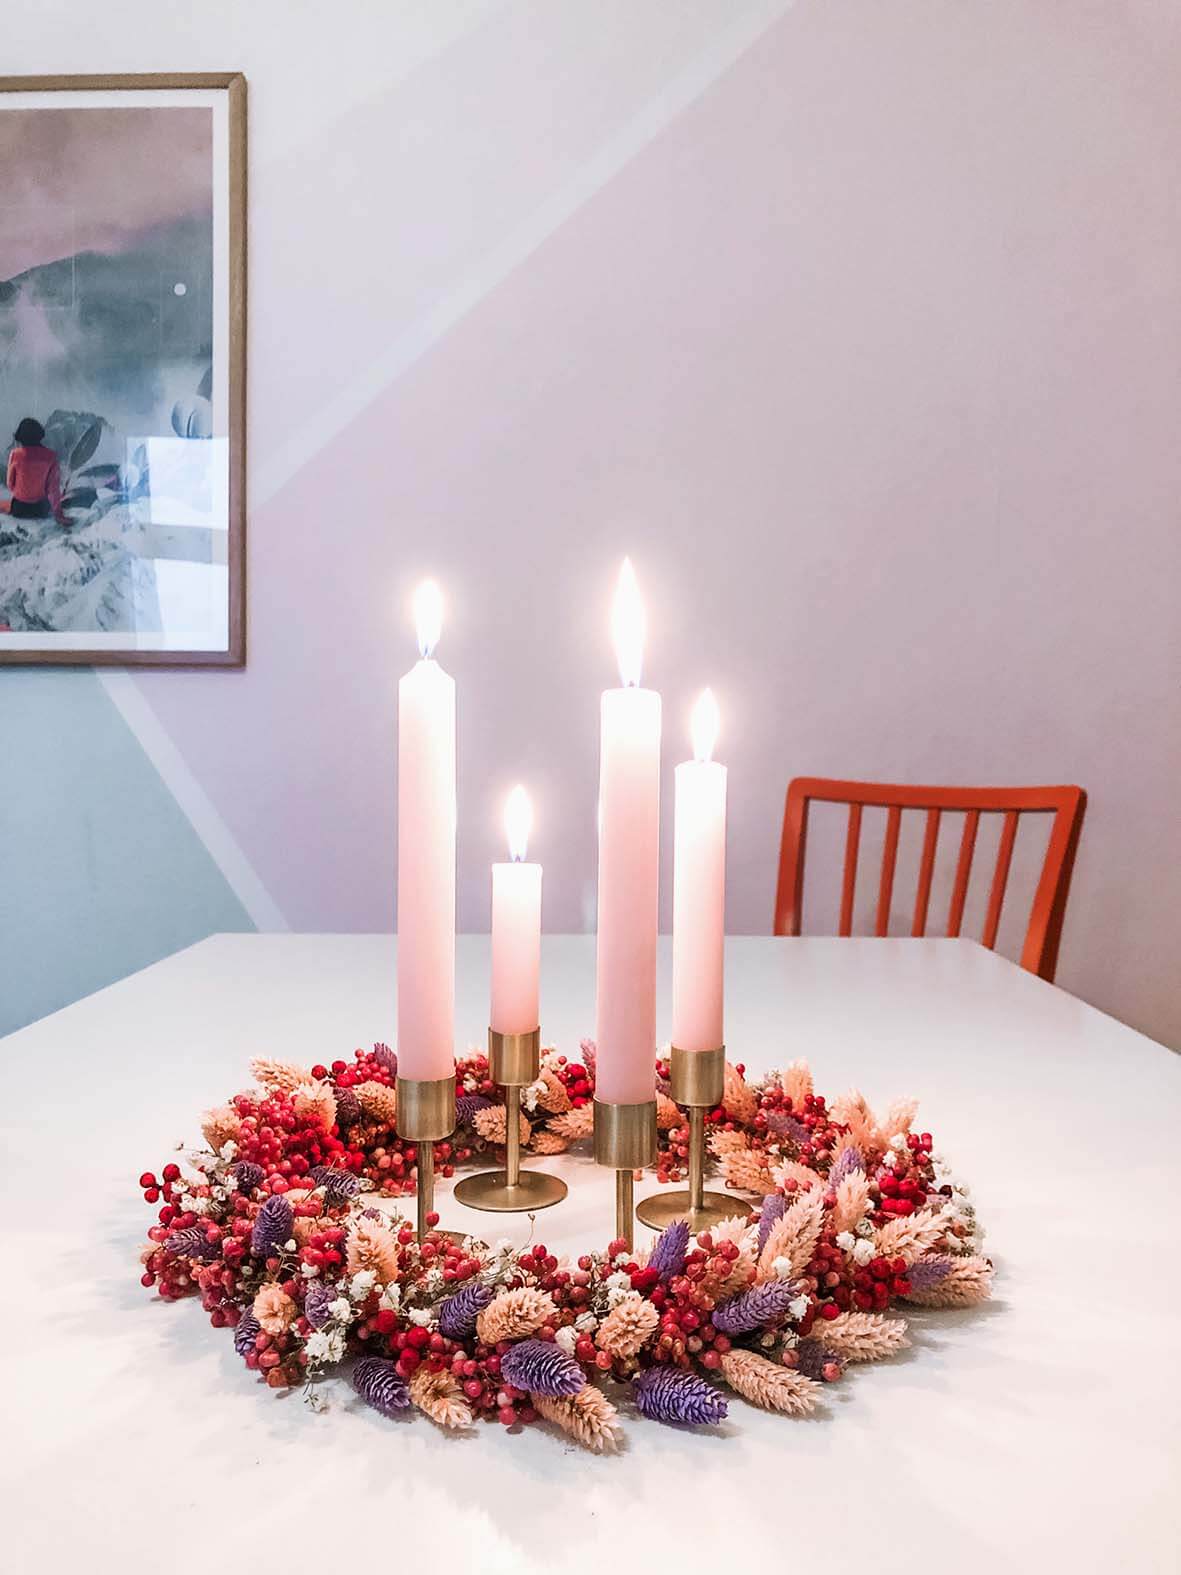 Der farbenfrohe Adventskranz liegt mittig auf dem weißen Esstisch. Alle vier Kerzen sind entzündet.